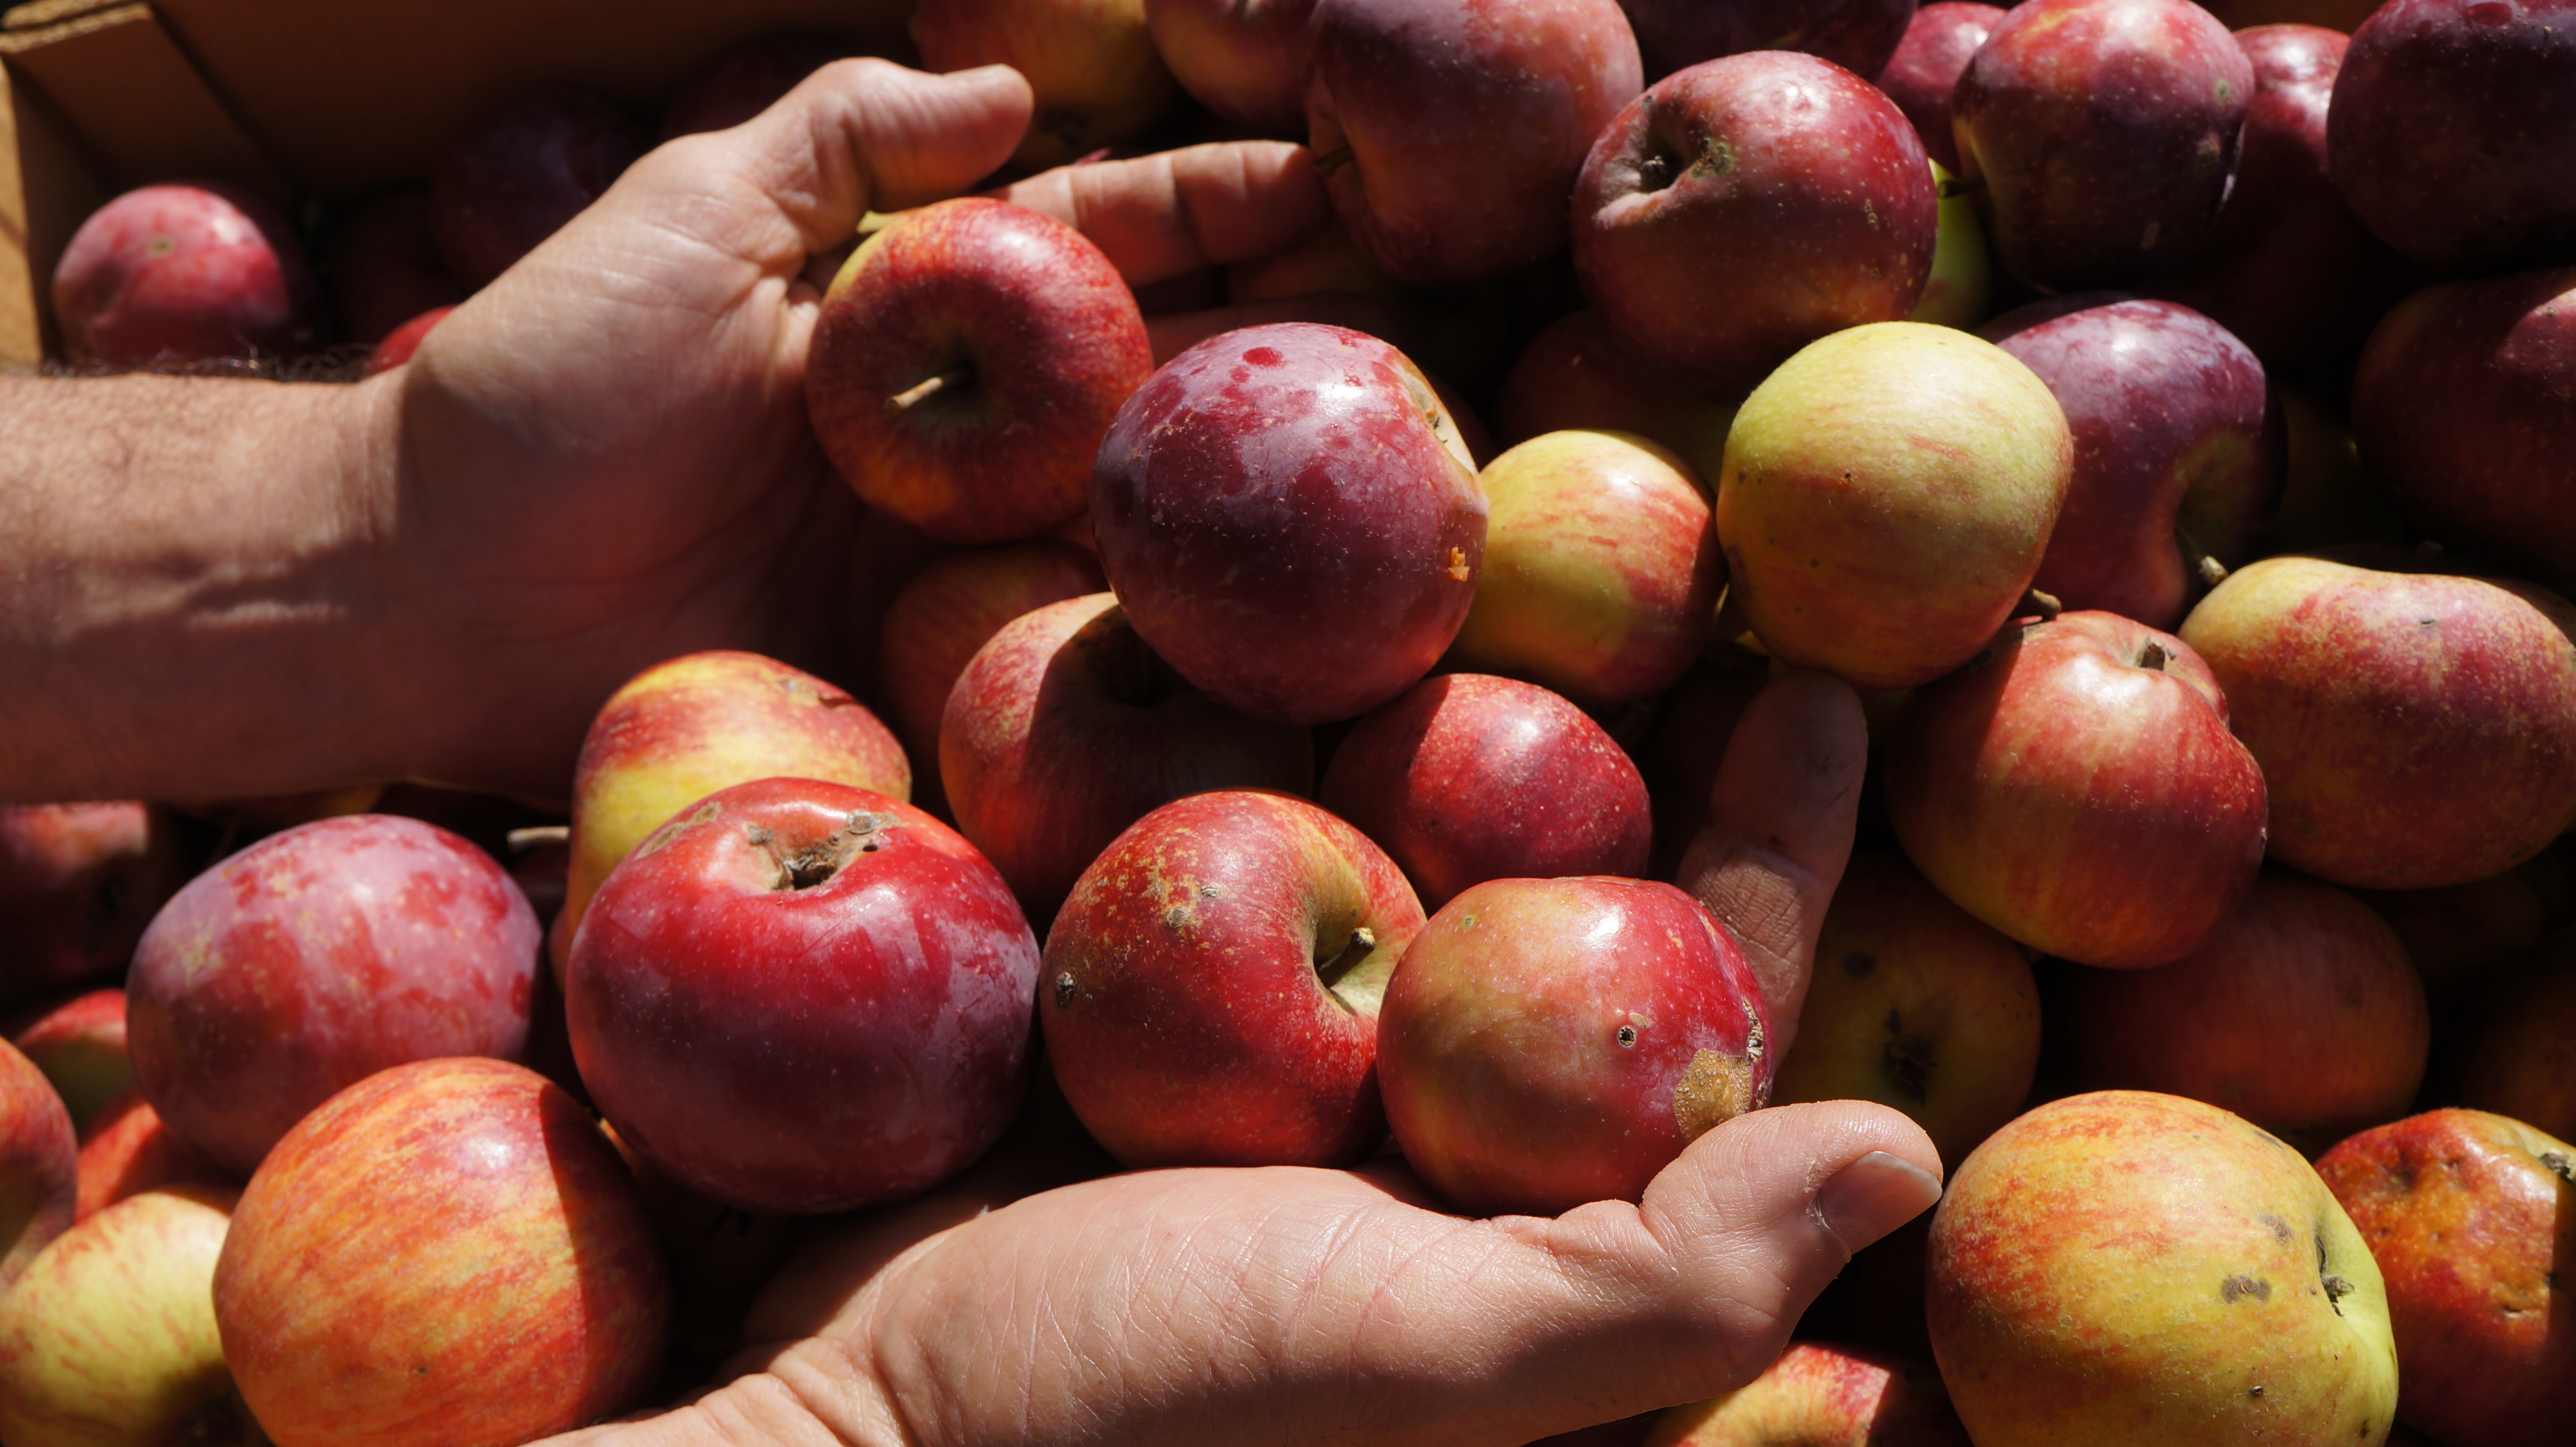 Jablko v hlavní roli! Jak se šlechtí, destiluje a předvádí v kuchyni?